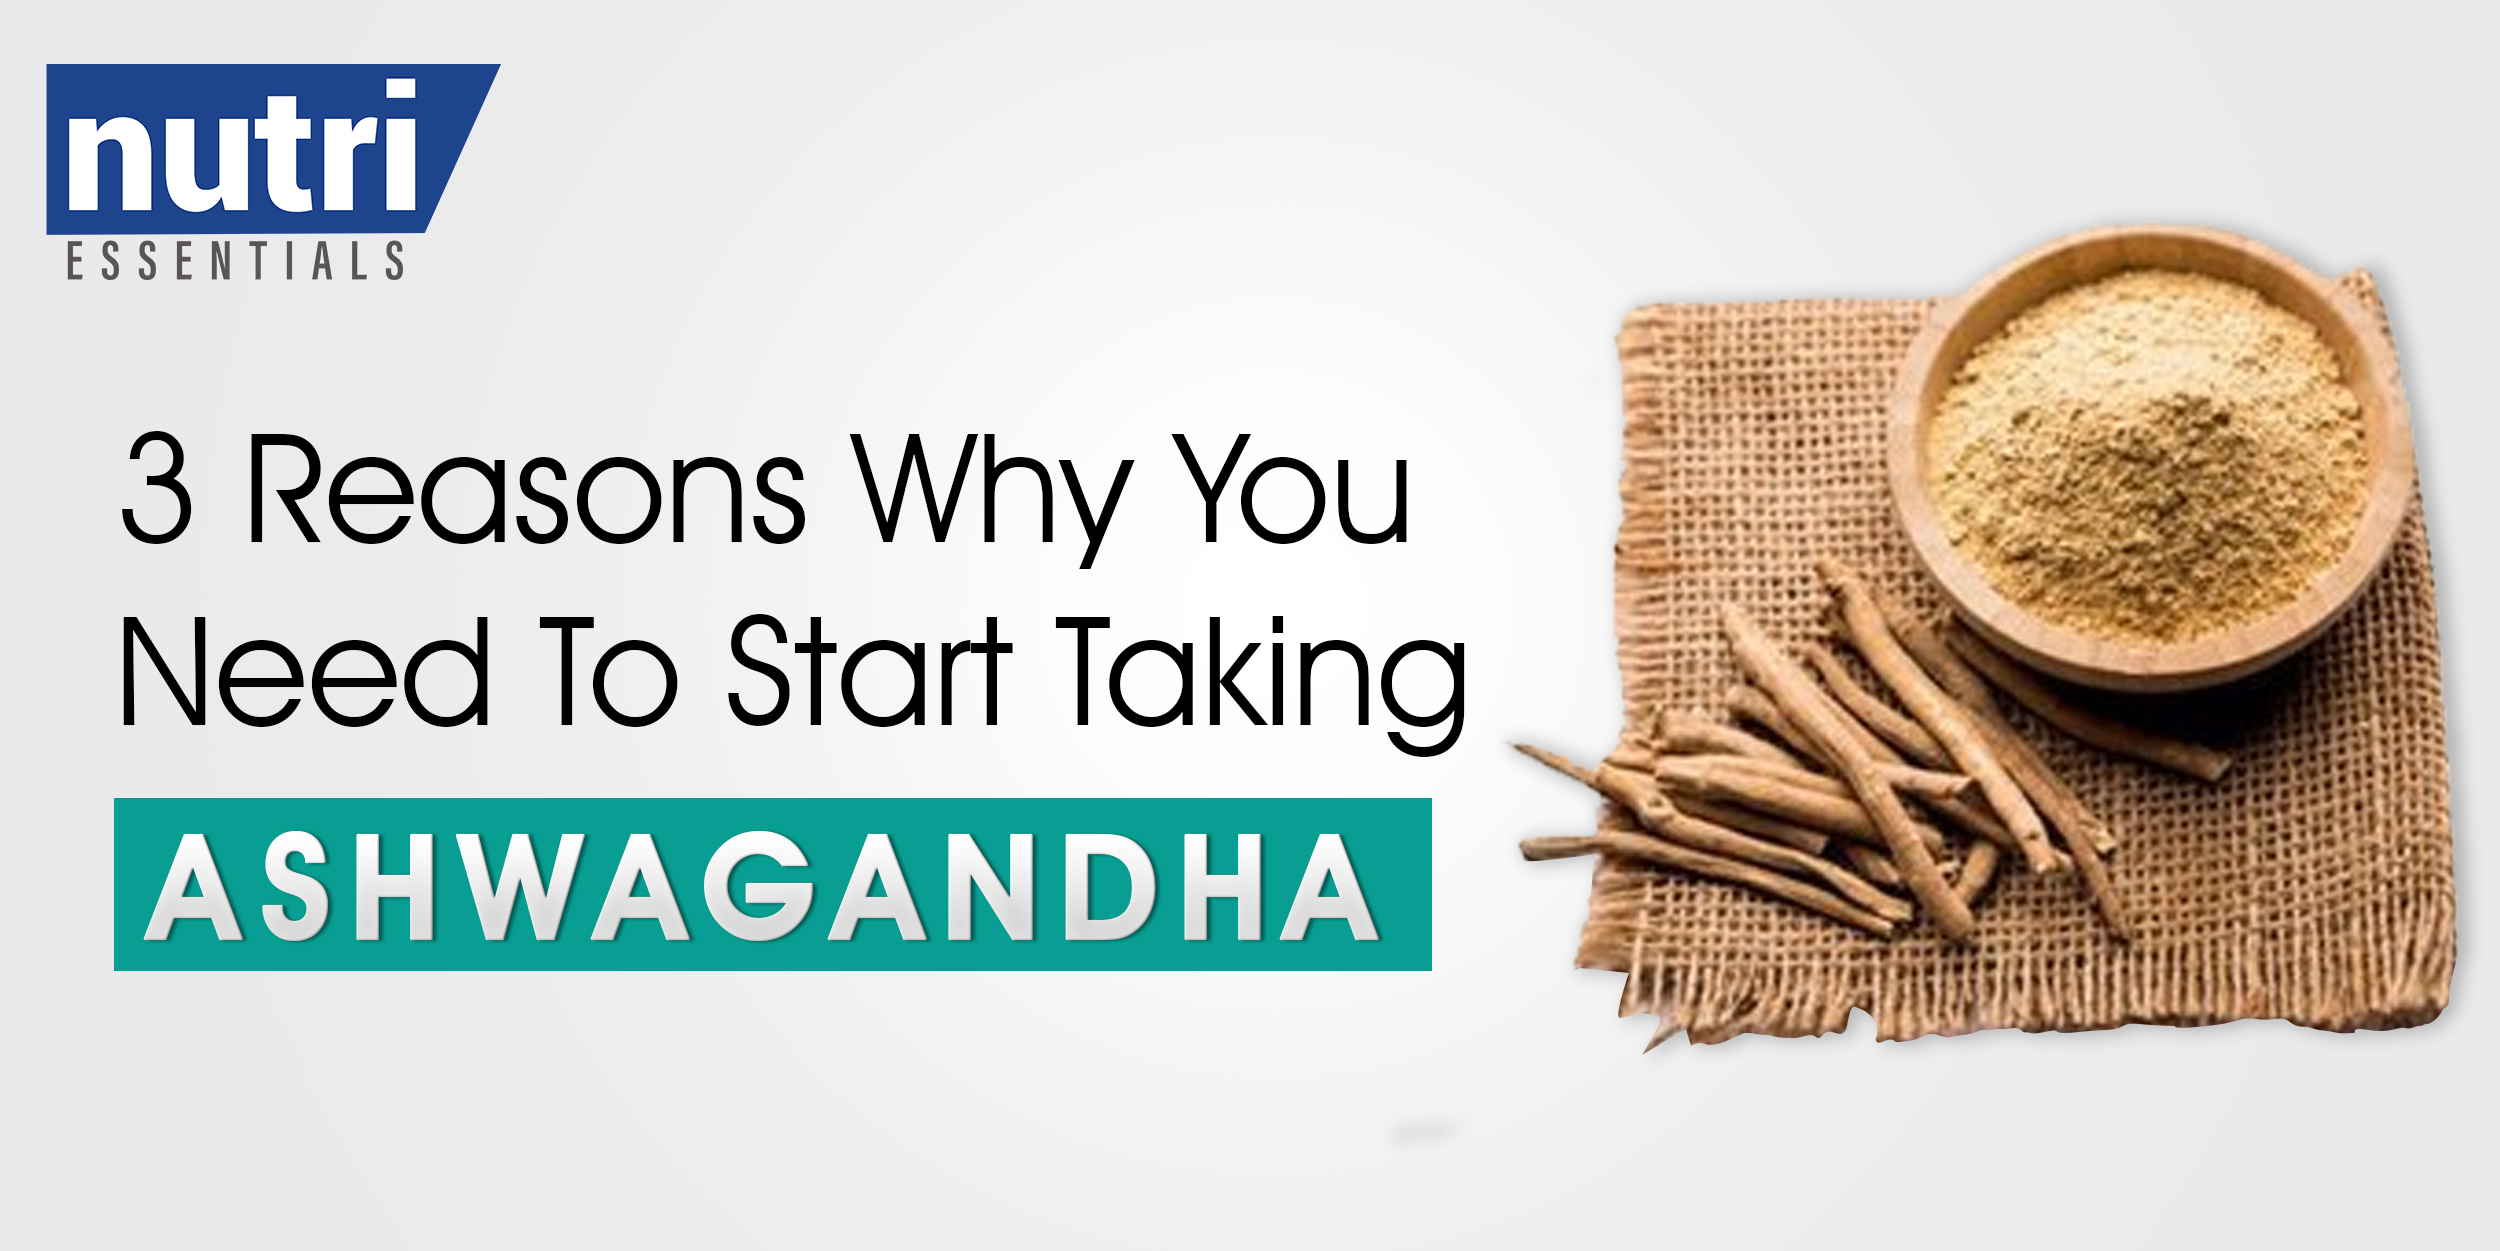 3 REASONS WHY YOU NEED TO START TAKING ASHWAGANDHA